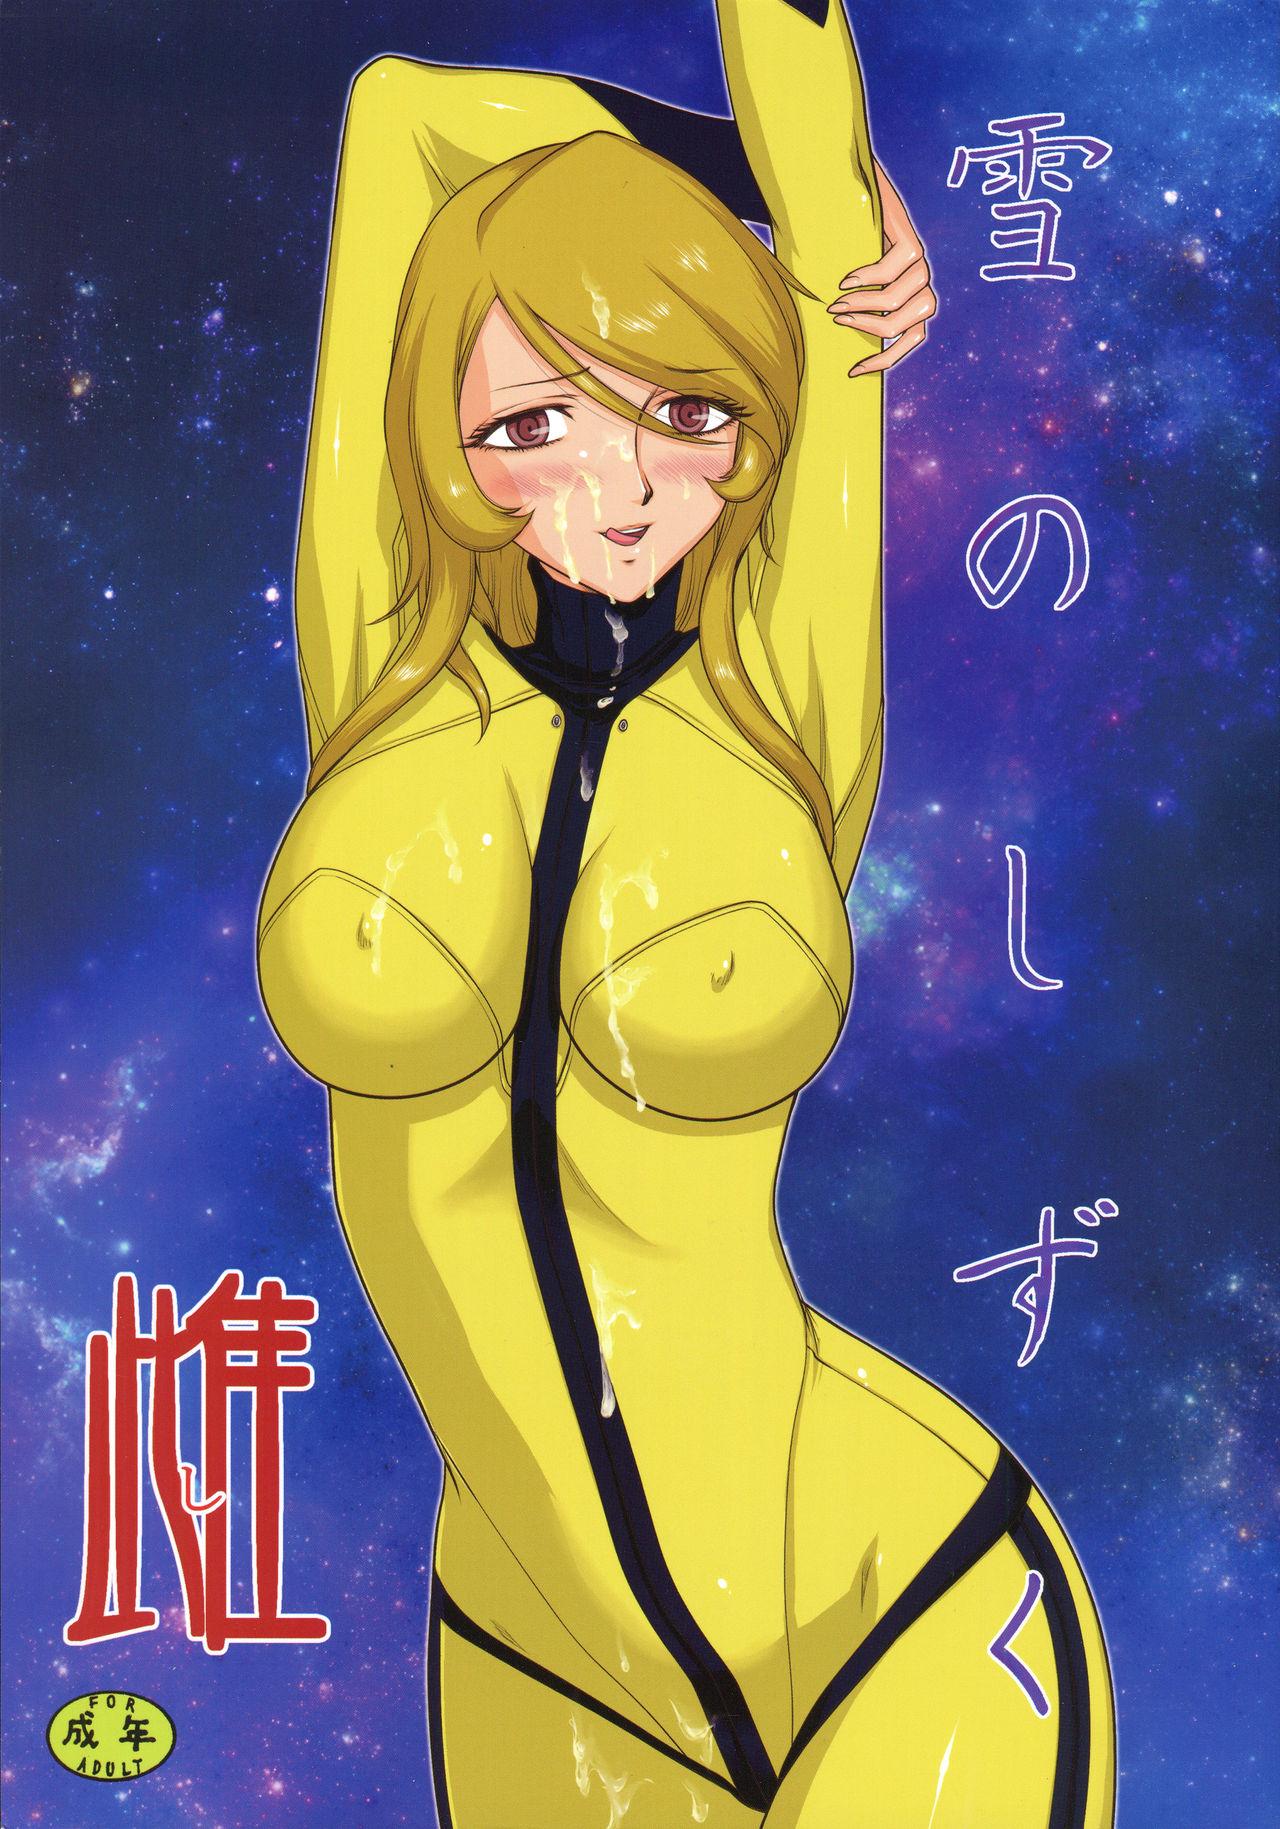 Gapes Gaping Asshole Yuki no Shizuku Mesu - Space battleship yamato Space battleship yamato 2199 Reality Porn - Page 1